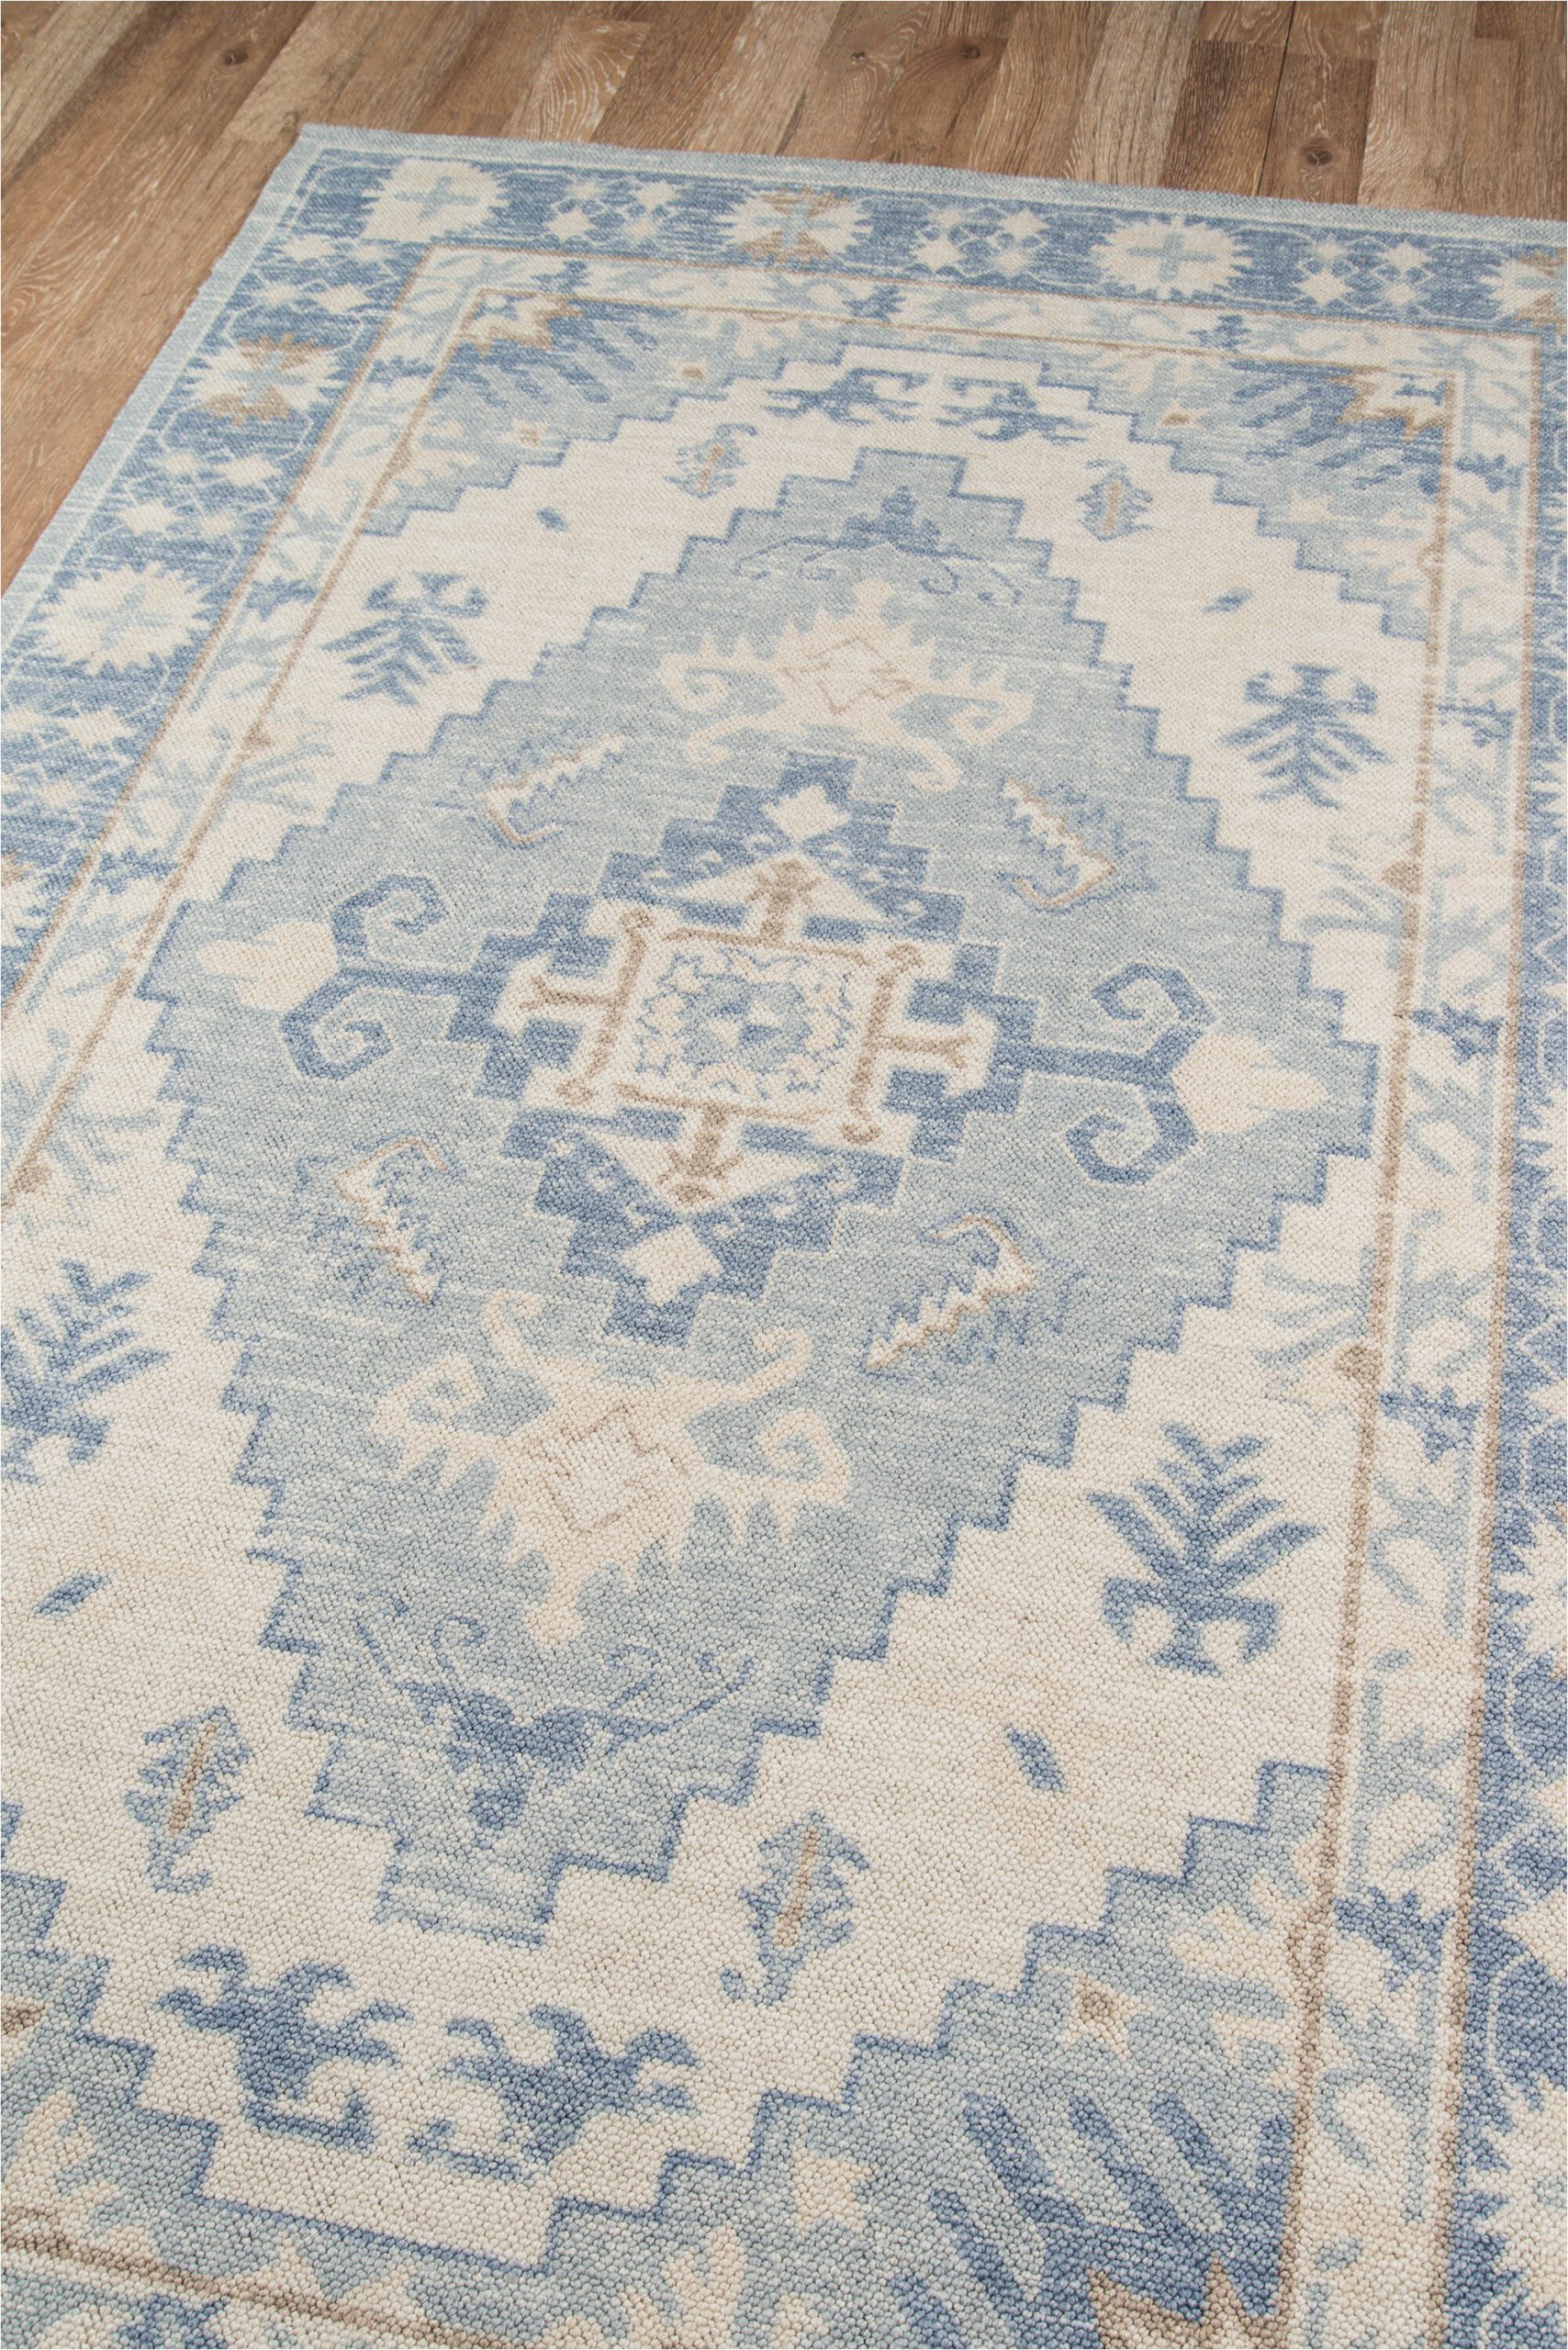 erela oriental blue area rug